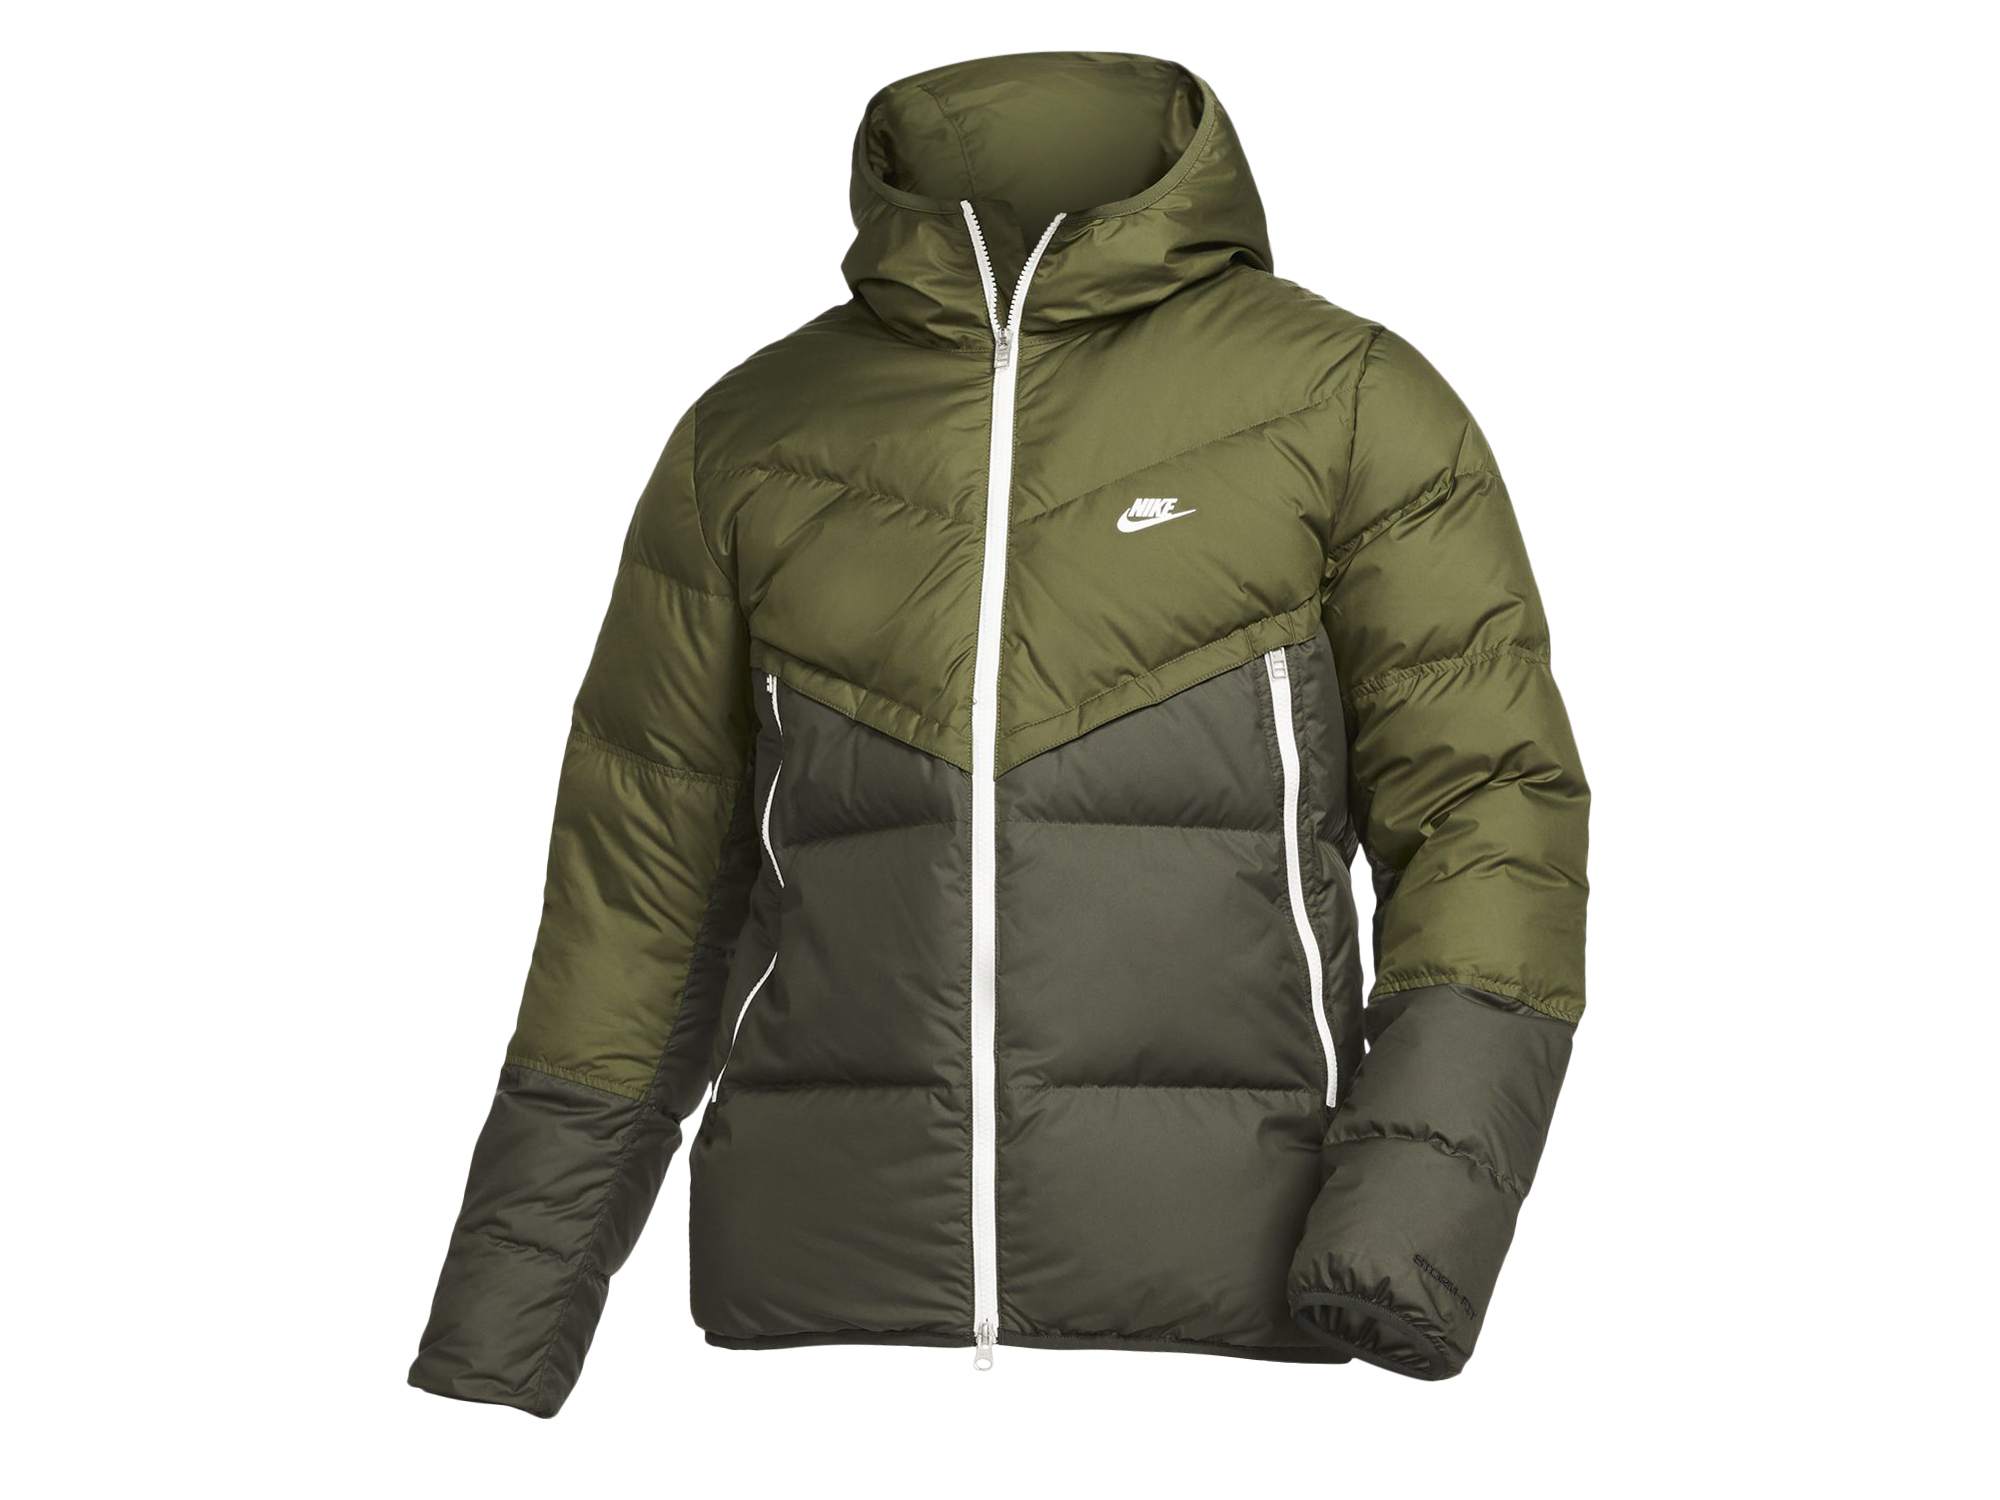 Nike Storm-Fit Windrunner Jacket